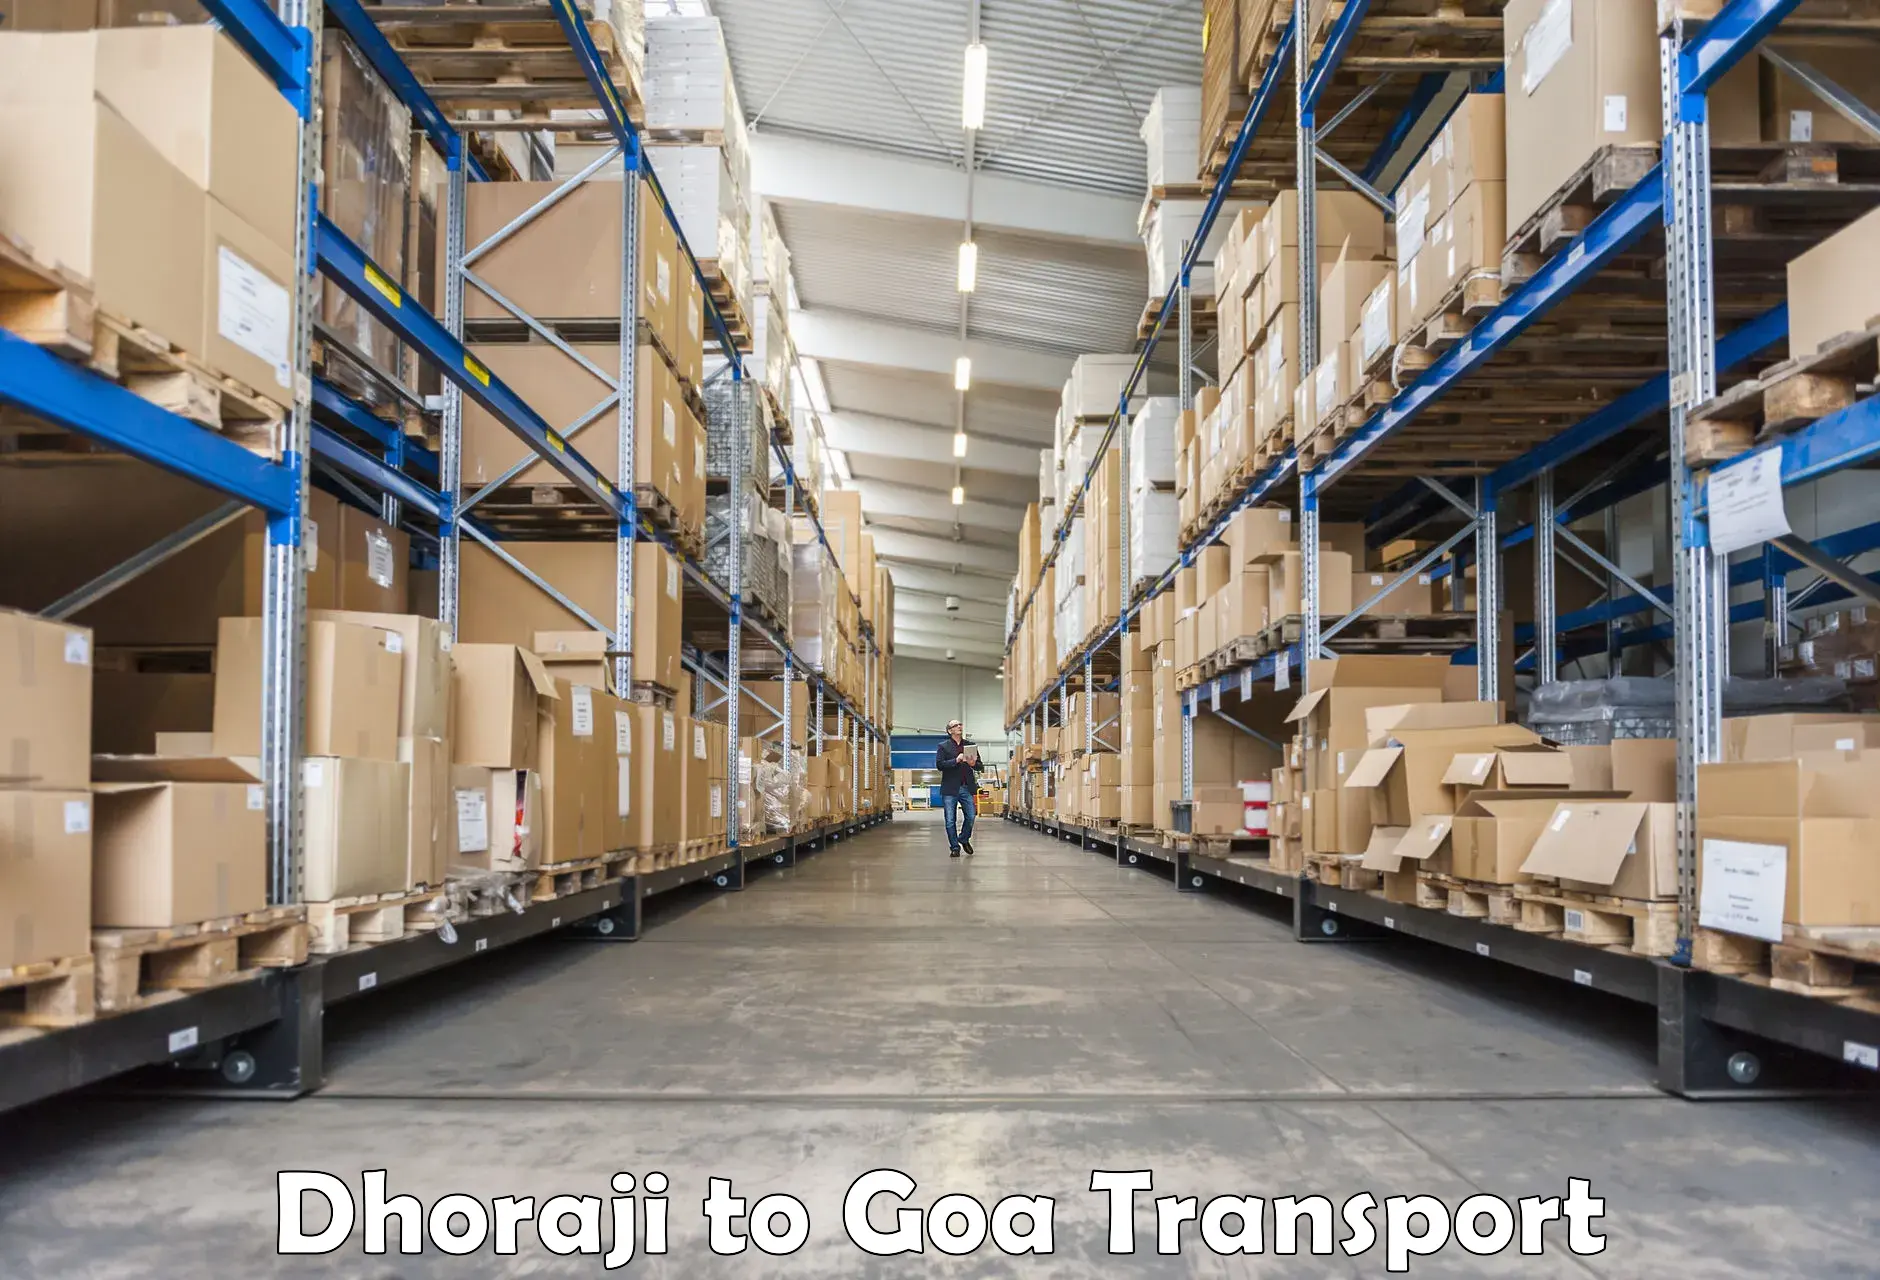 Online transport service Dhoraji to Vasco da Gama